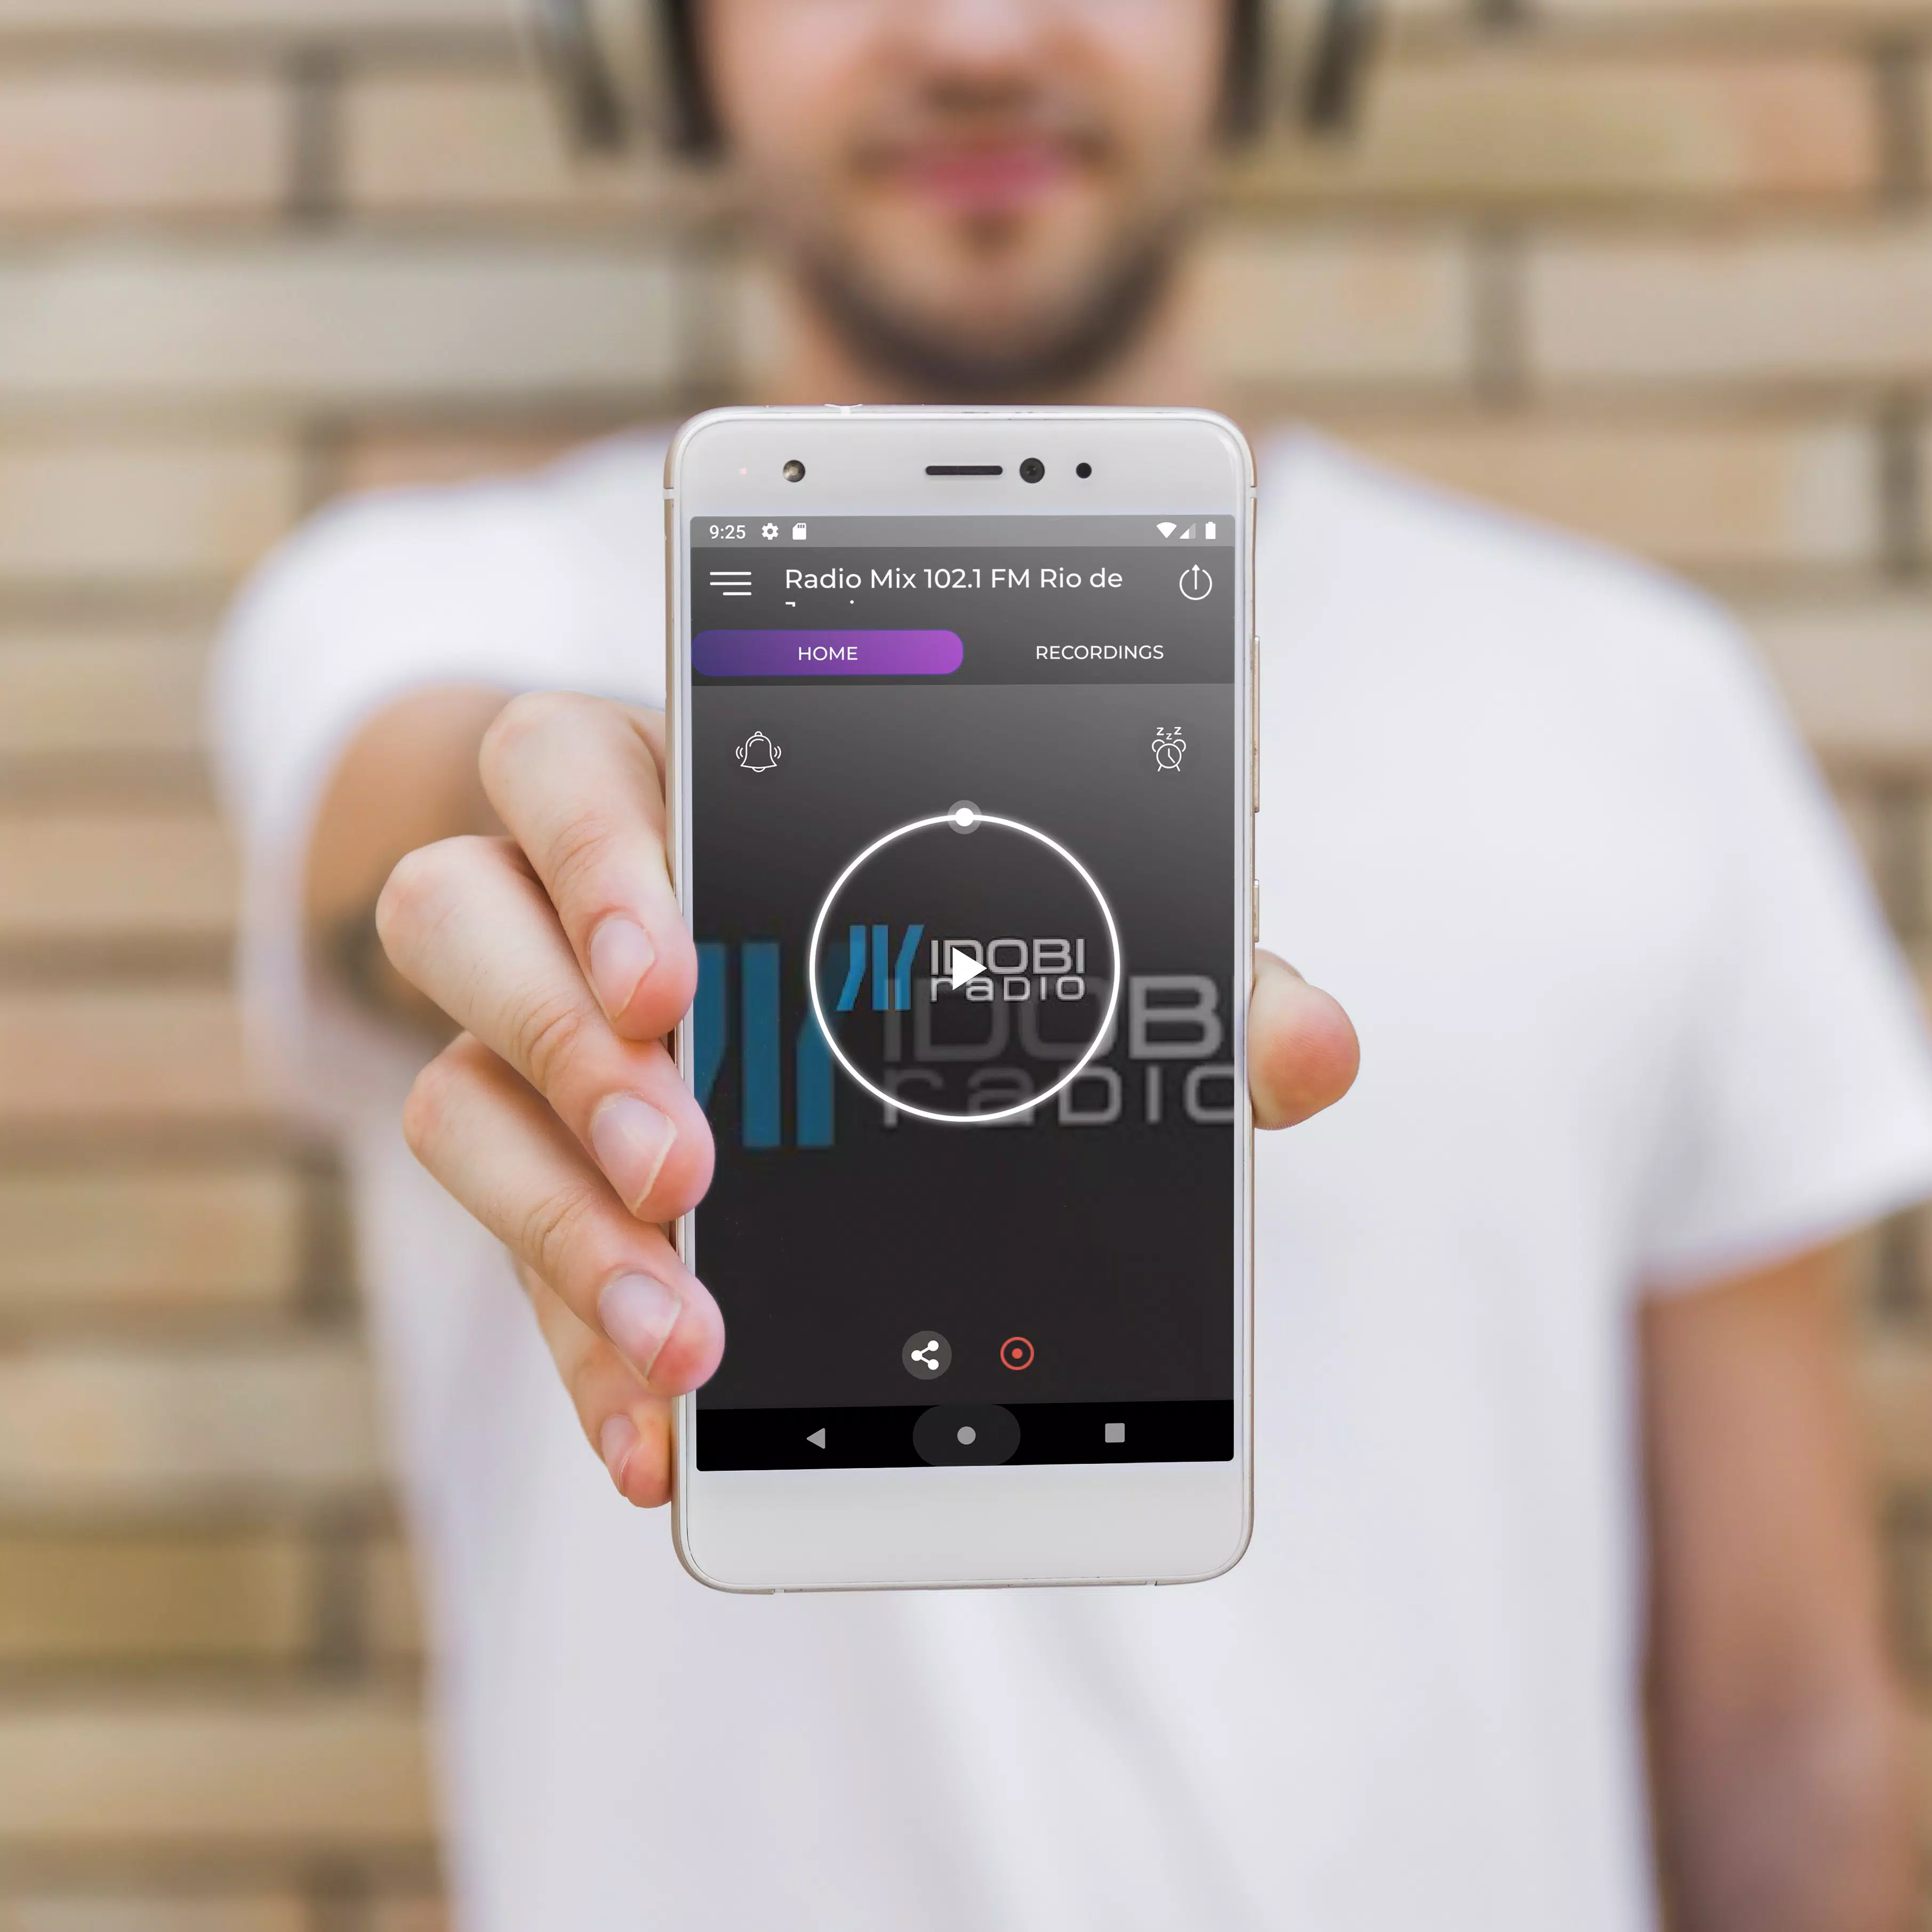 Radio Mix 102.1 FM Rio de Janeiro Online Livre App for Android - APK  Download